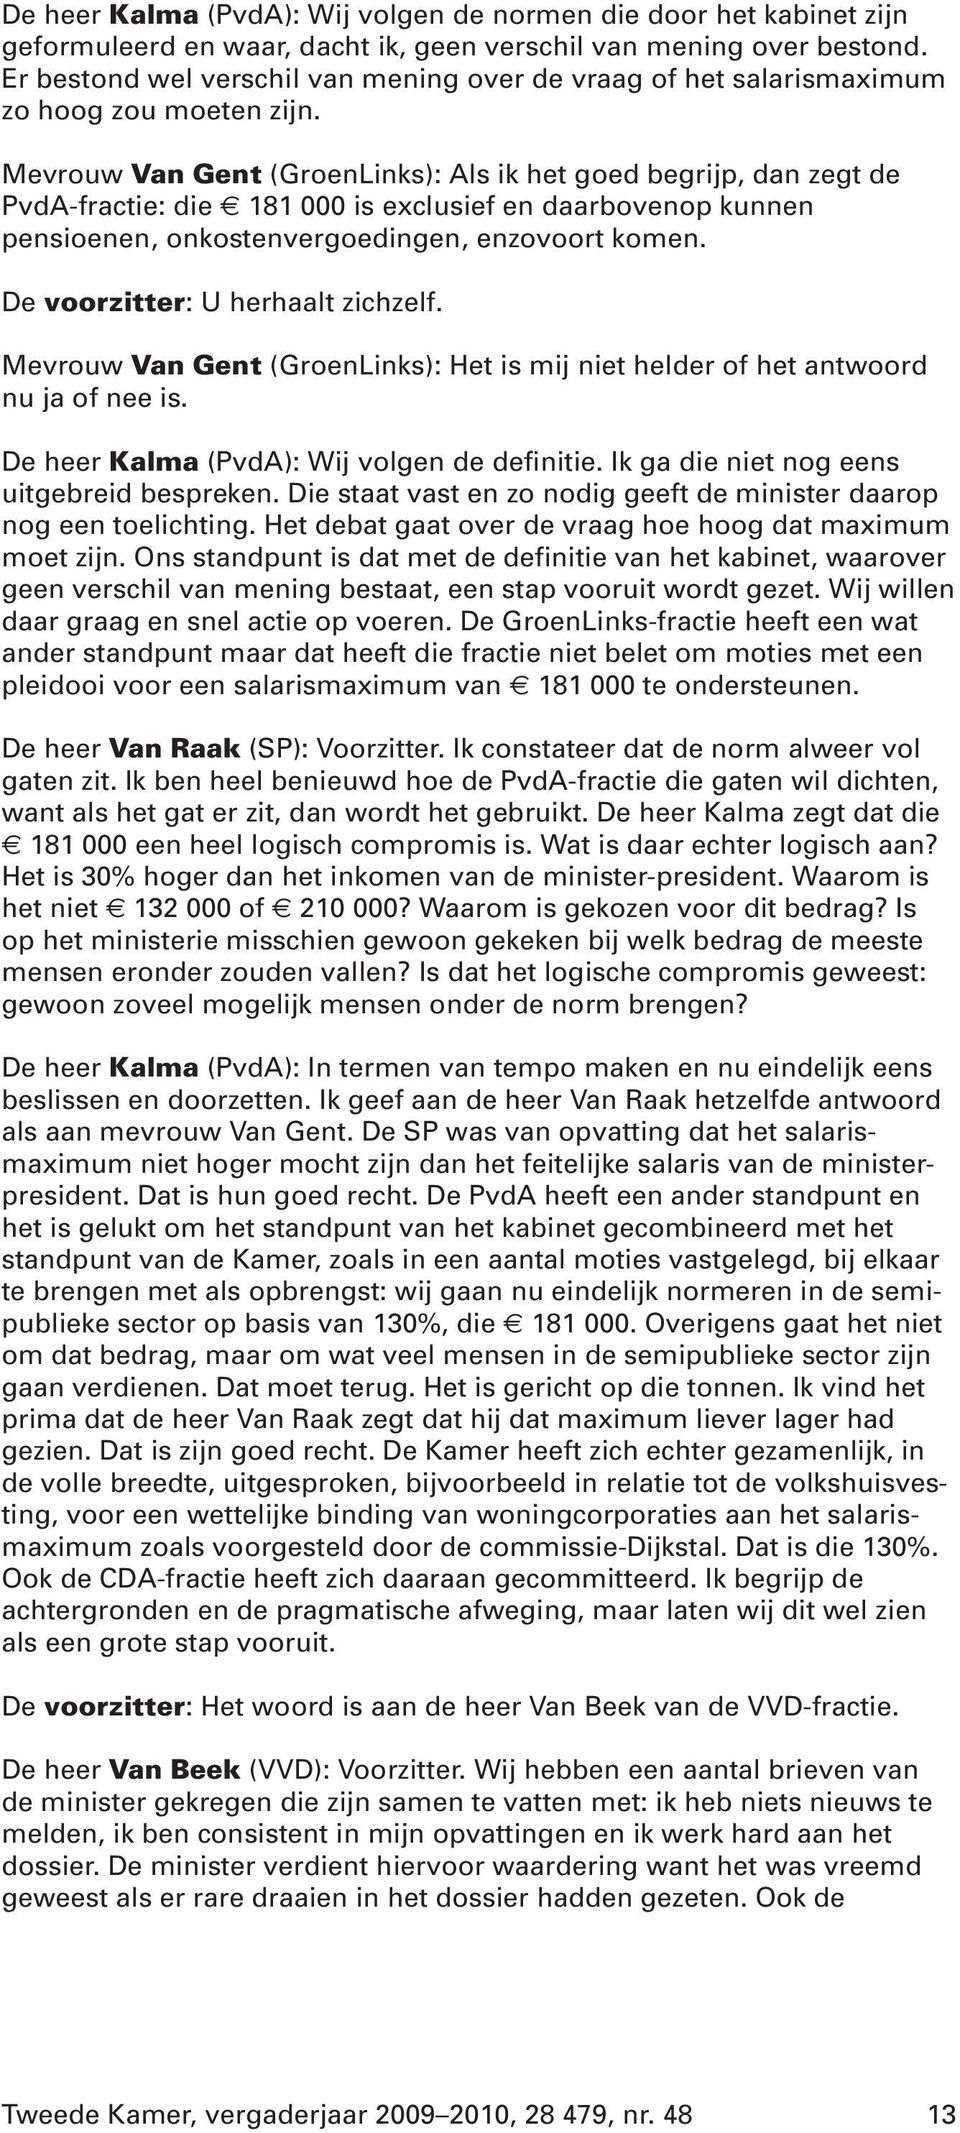 Mevrouw Van Gent (GroenLinks): Als ik het goed begrijp, dan zegt de PvdA-fractie: die 181 000 is exclusief en daarbovenop kunnen pensioenen, onkostenvergoedingen, enzovoort komen.